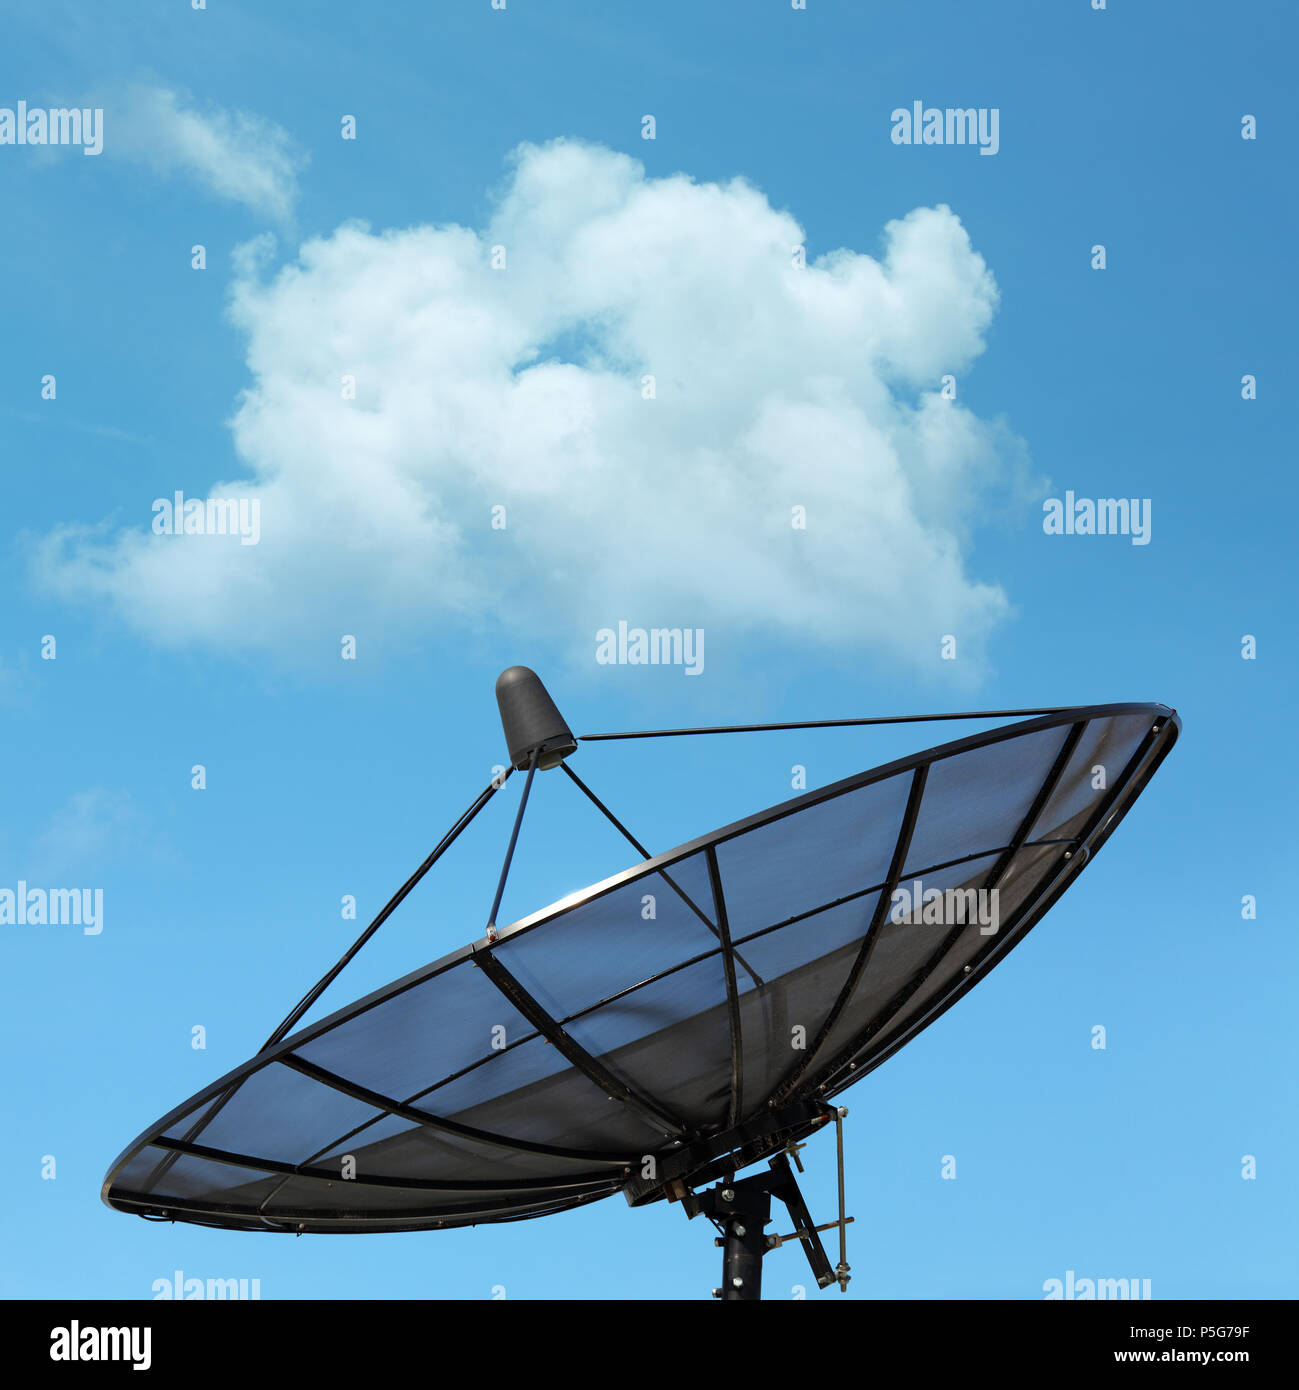 Dish Antenna Stock Photos & Dish Antenna Stock Images - Alamy